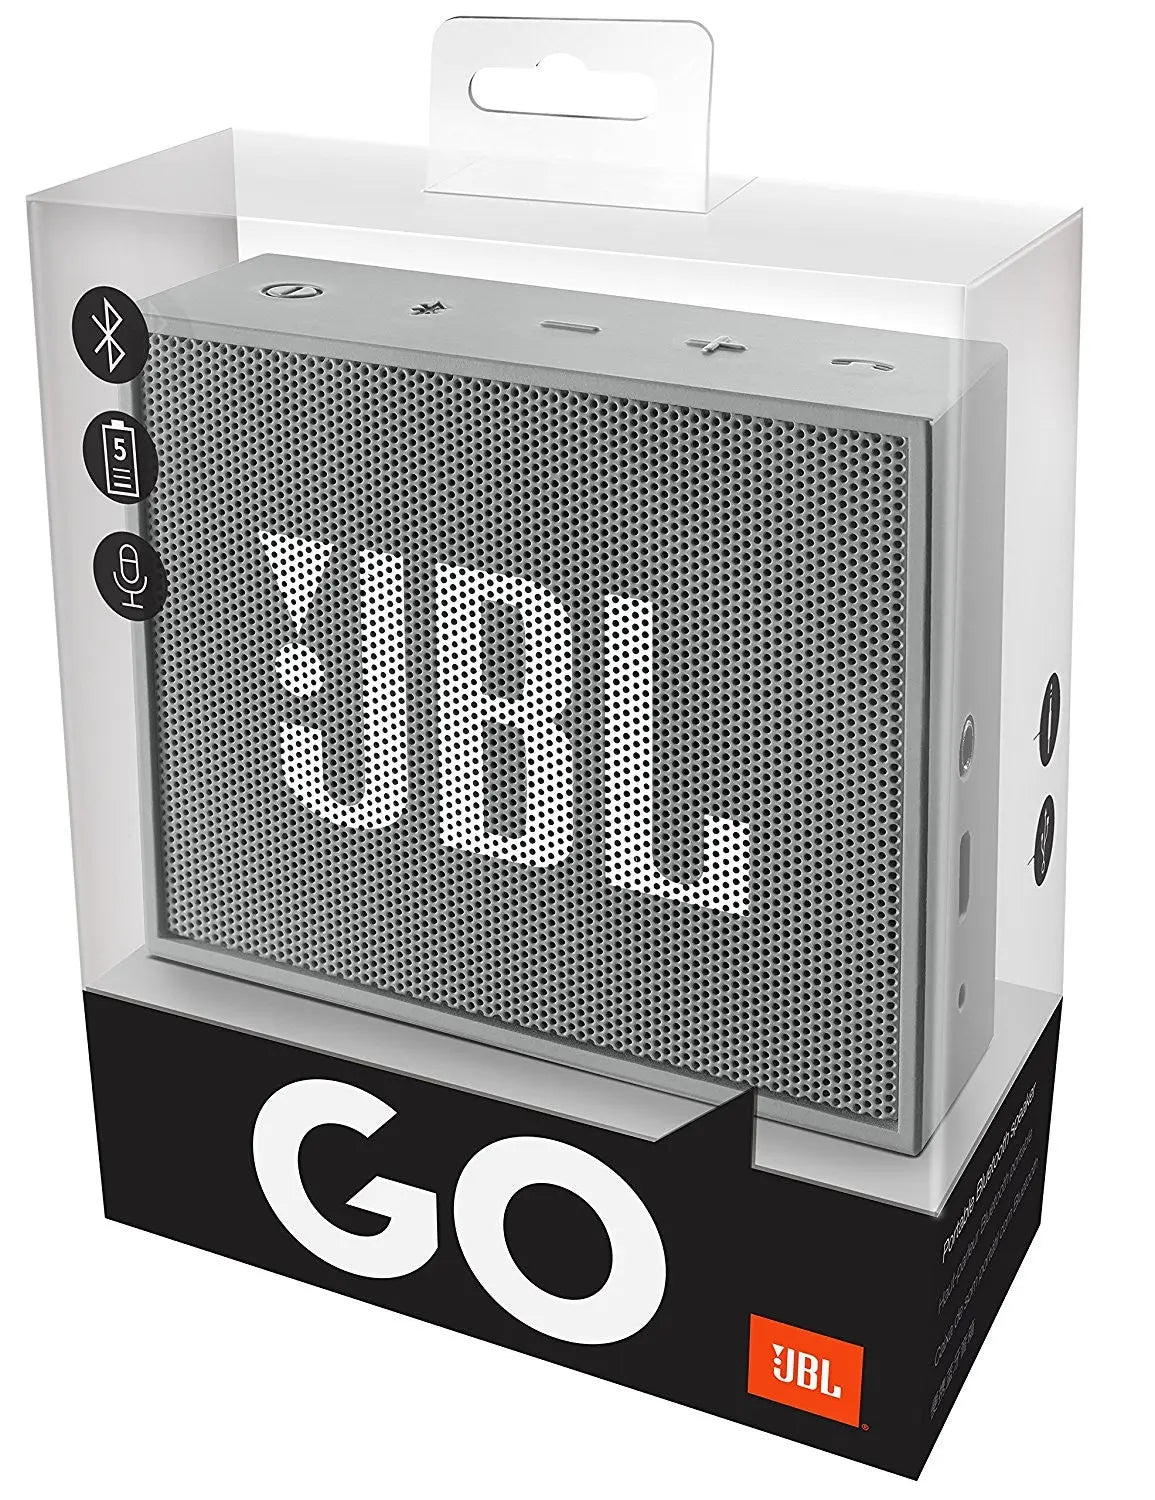 Enceinte Bluetooth JBL Go GRIS comptact sans fil